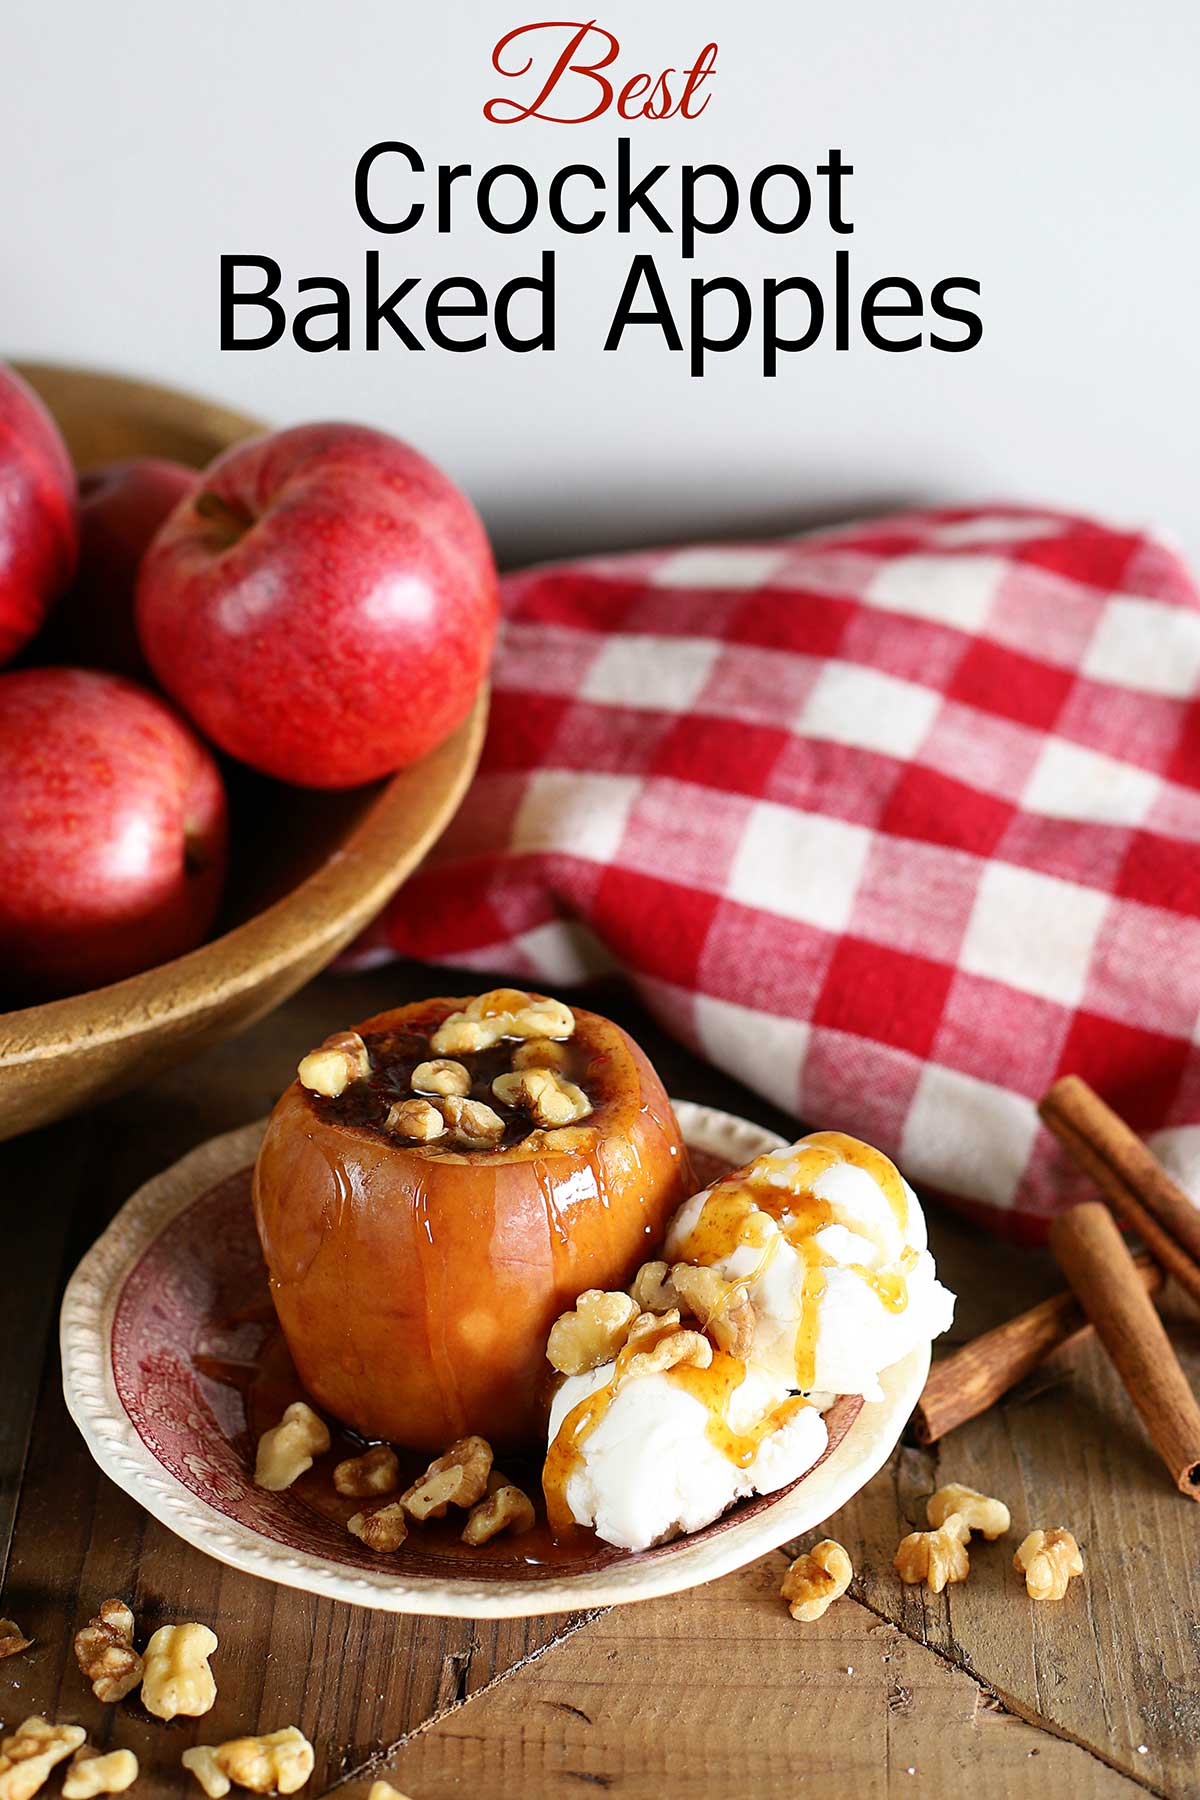 Best crock pot baked apple recipe